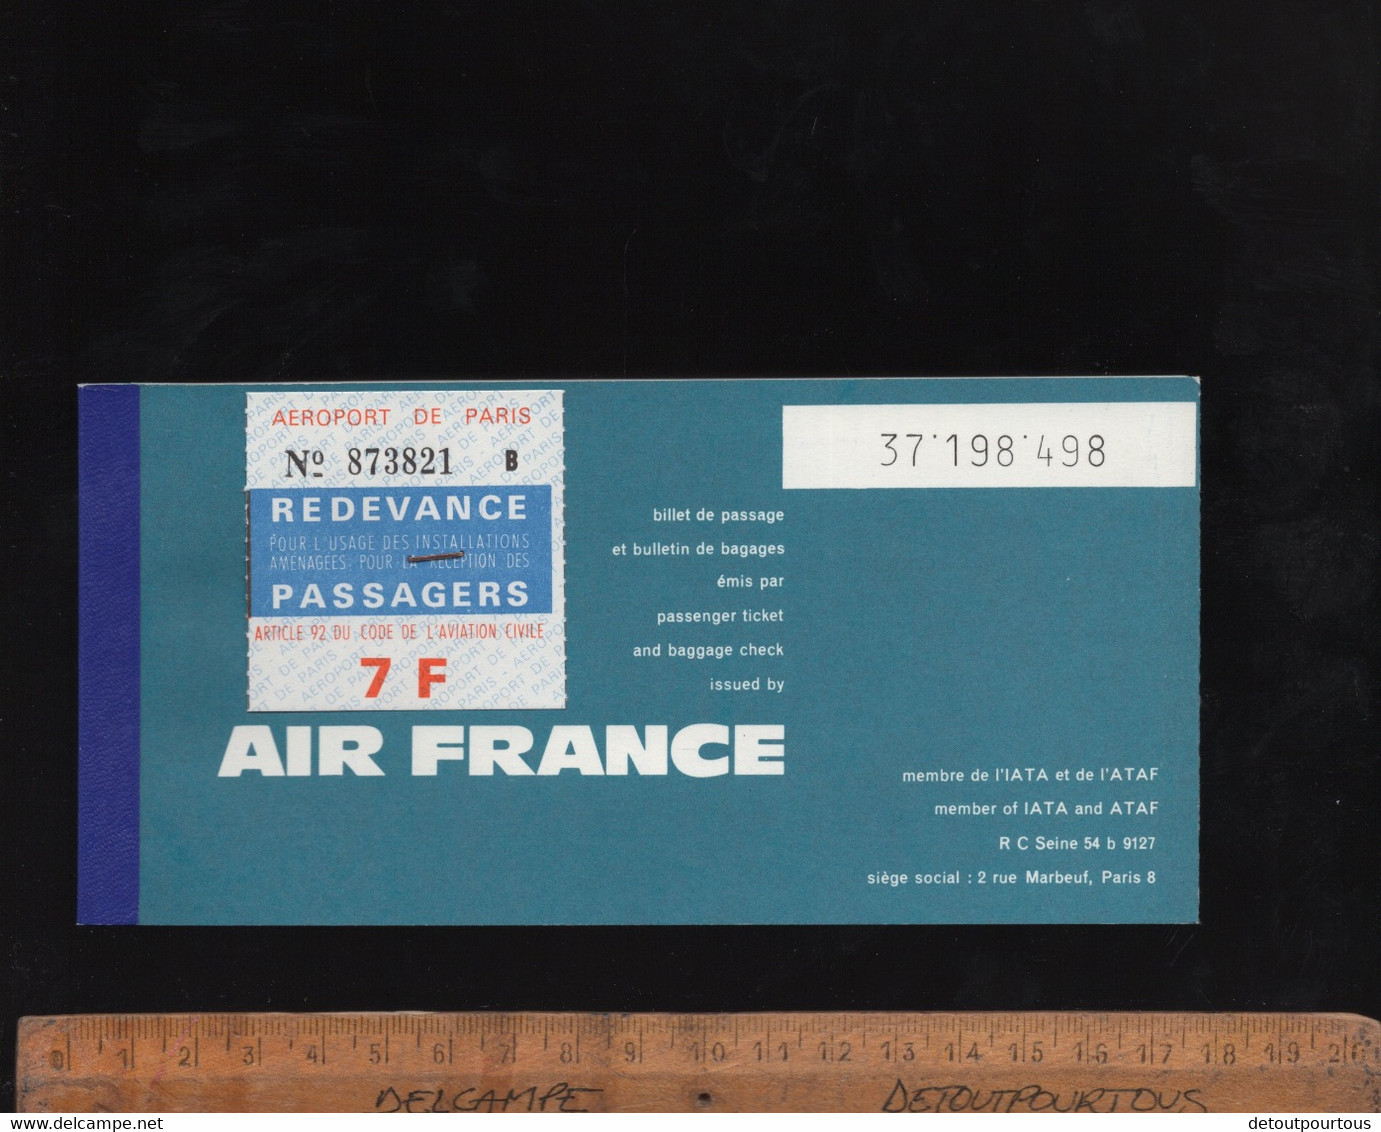 Billet D'avion AIR FRANCE Airways Ticket D'embarquement Aéroport De Paris Orly Pour Malaga Spain 1966 - Europe